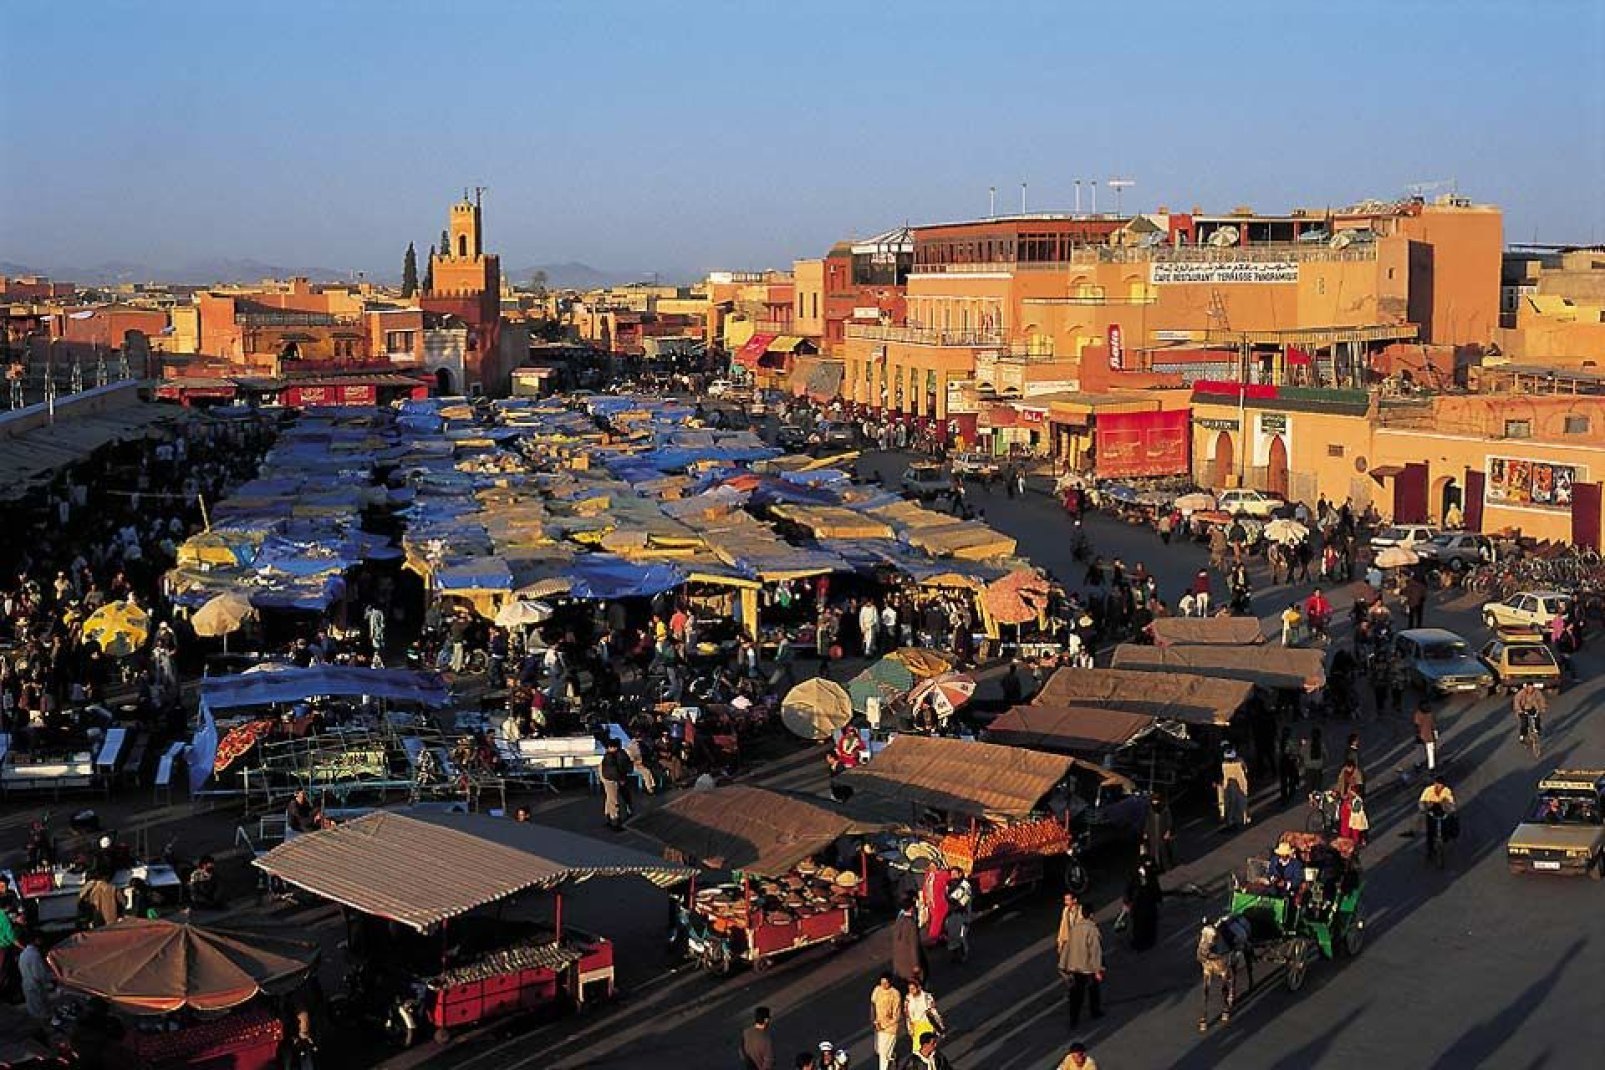 Cette place est le centre géographique, social et culturel de la médina. Elle est le rendez-vous des marchands berbères et des voyageurs et réunit tous les métiers traditionnels.